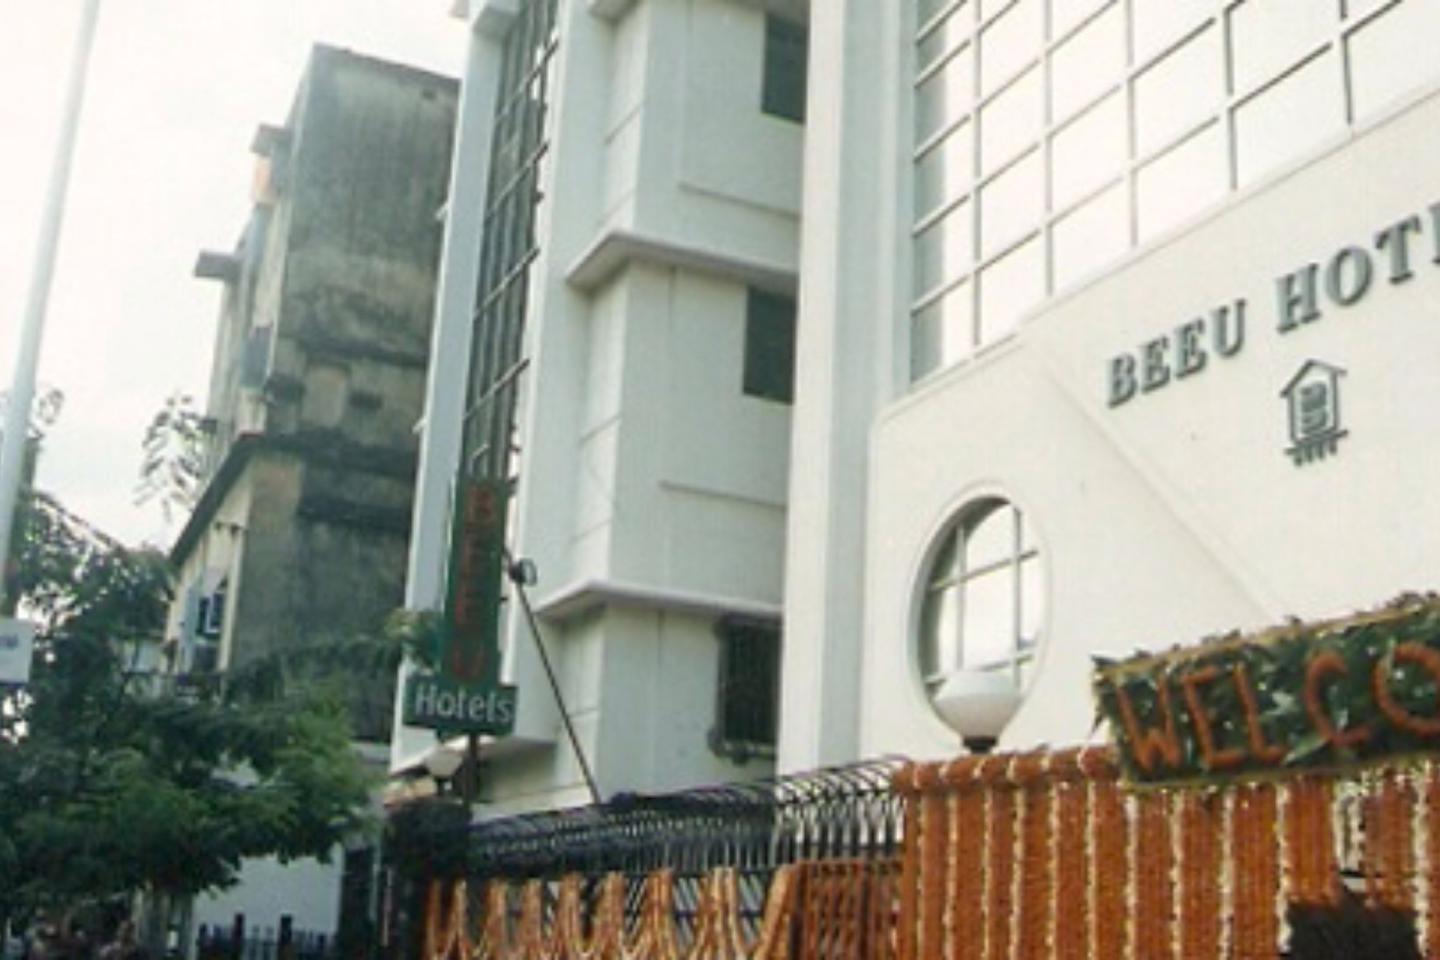 Beeu Hotel Kolkata